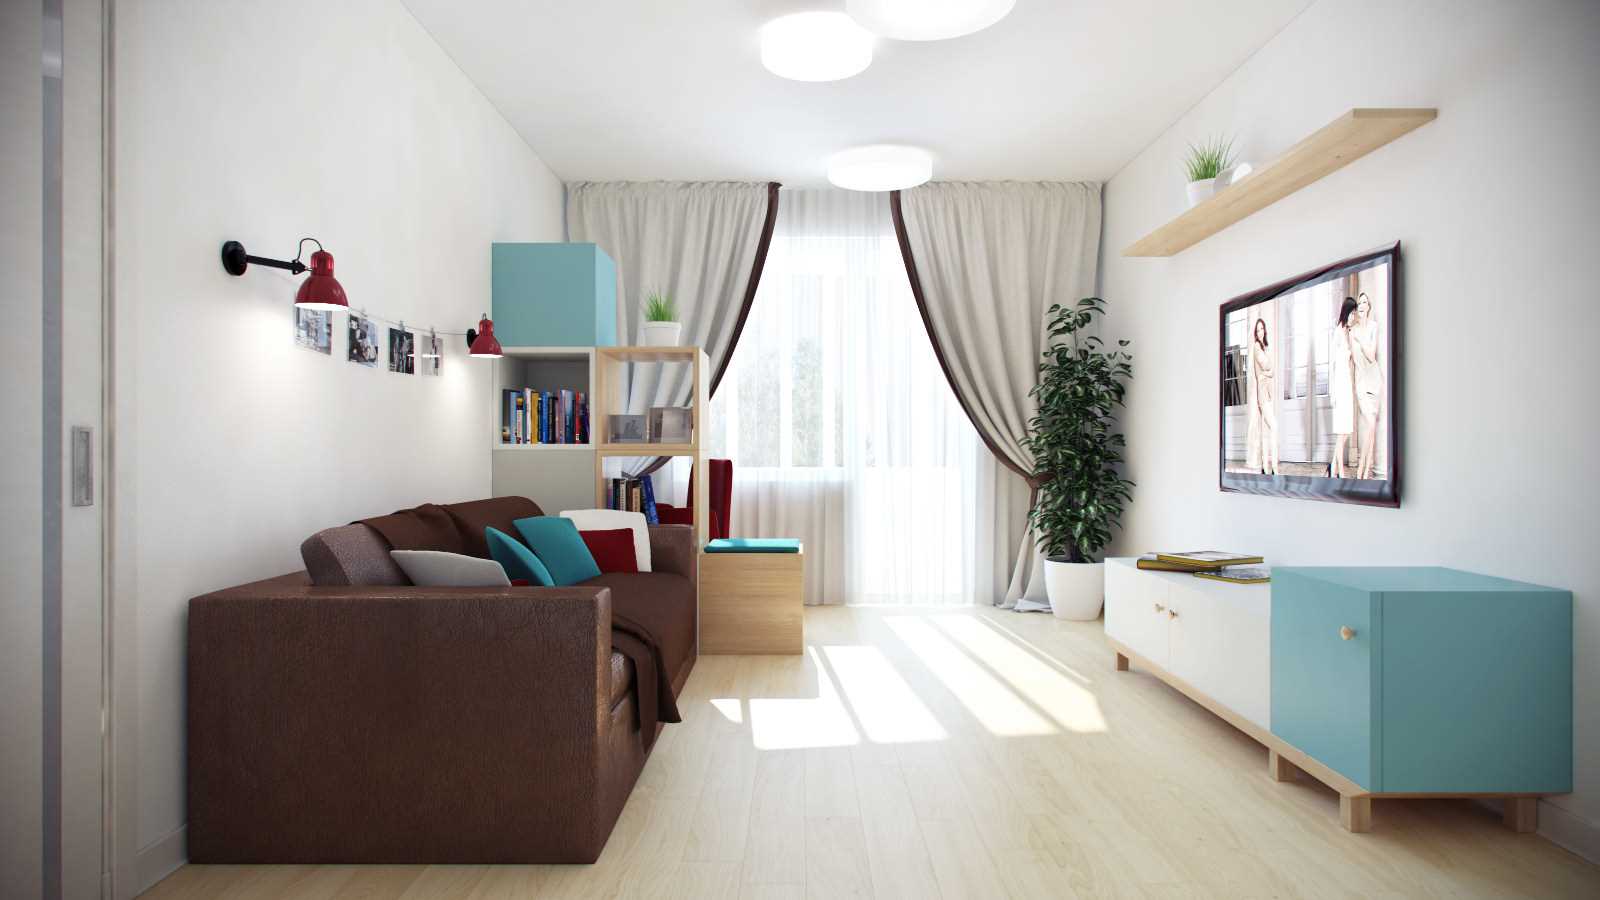 Un esempio di un interno luminoso appartamento di 70 mq